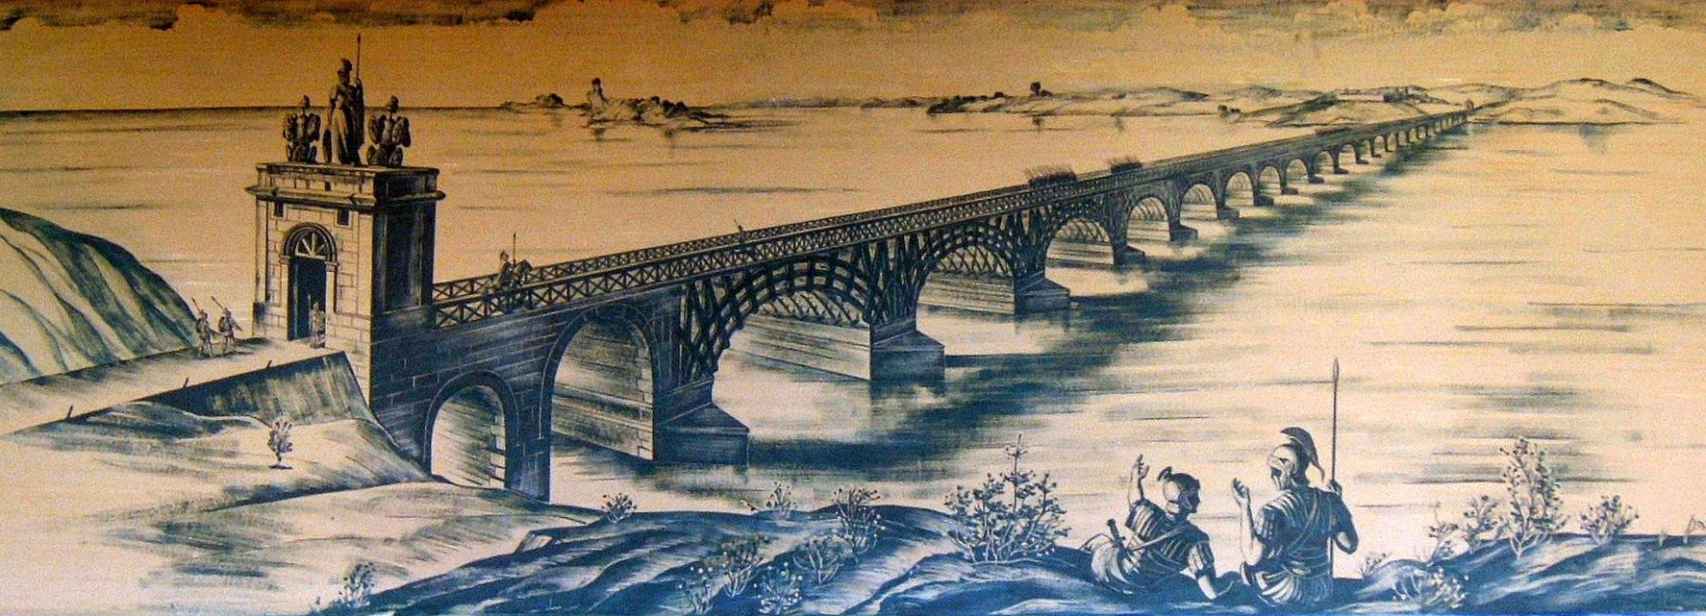 Ilustración del ingeniero Duperrex de cómo debió de ser el puente de Trajano.